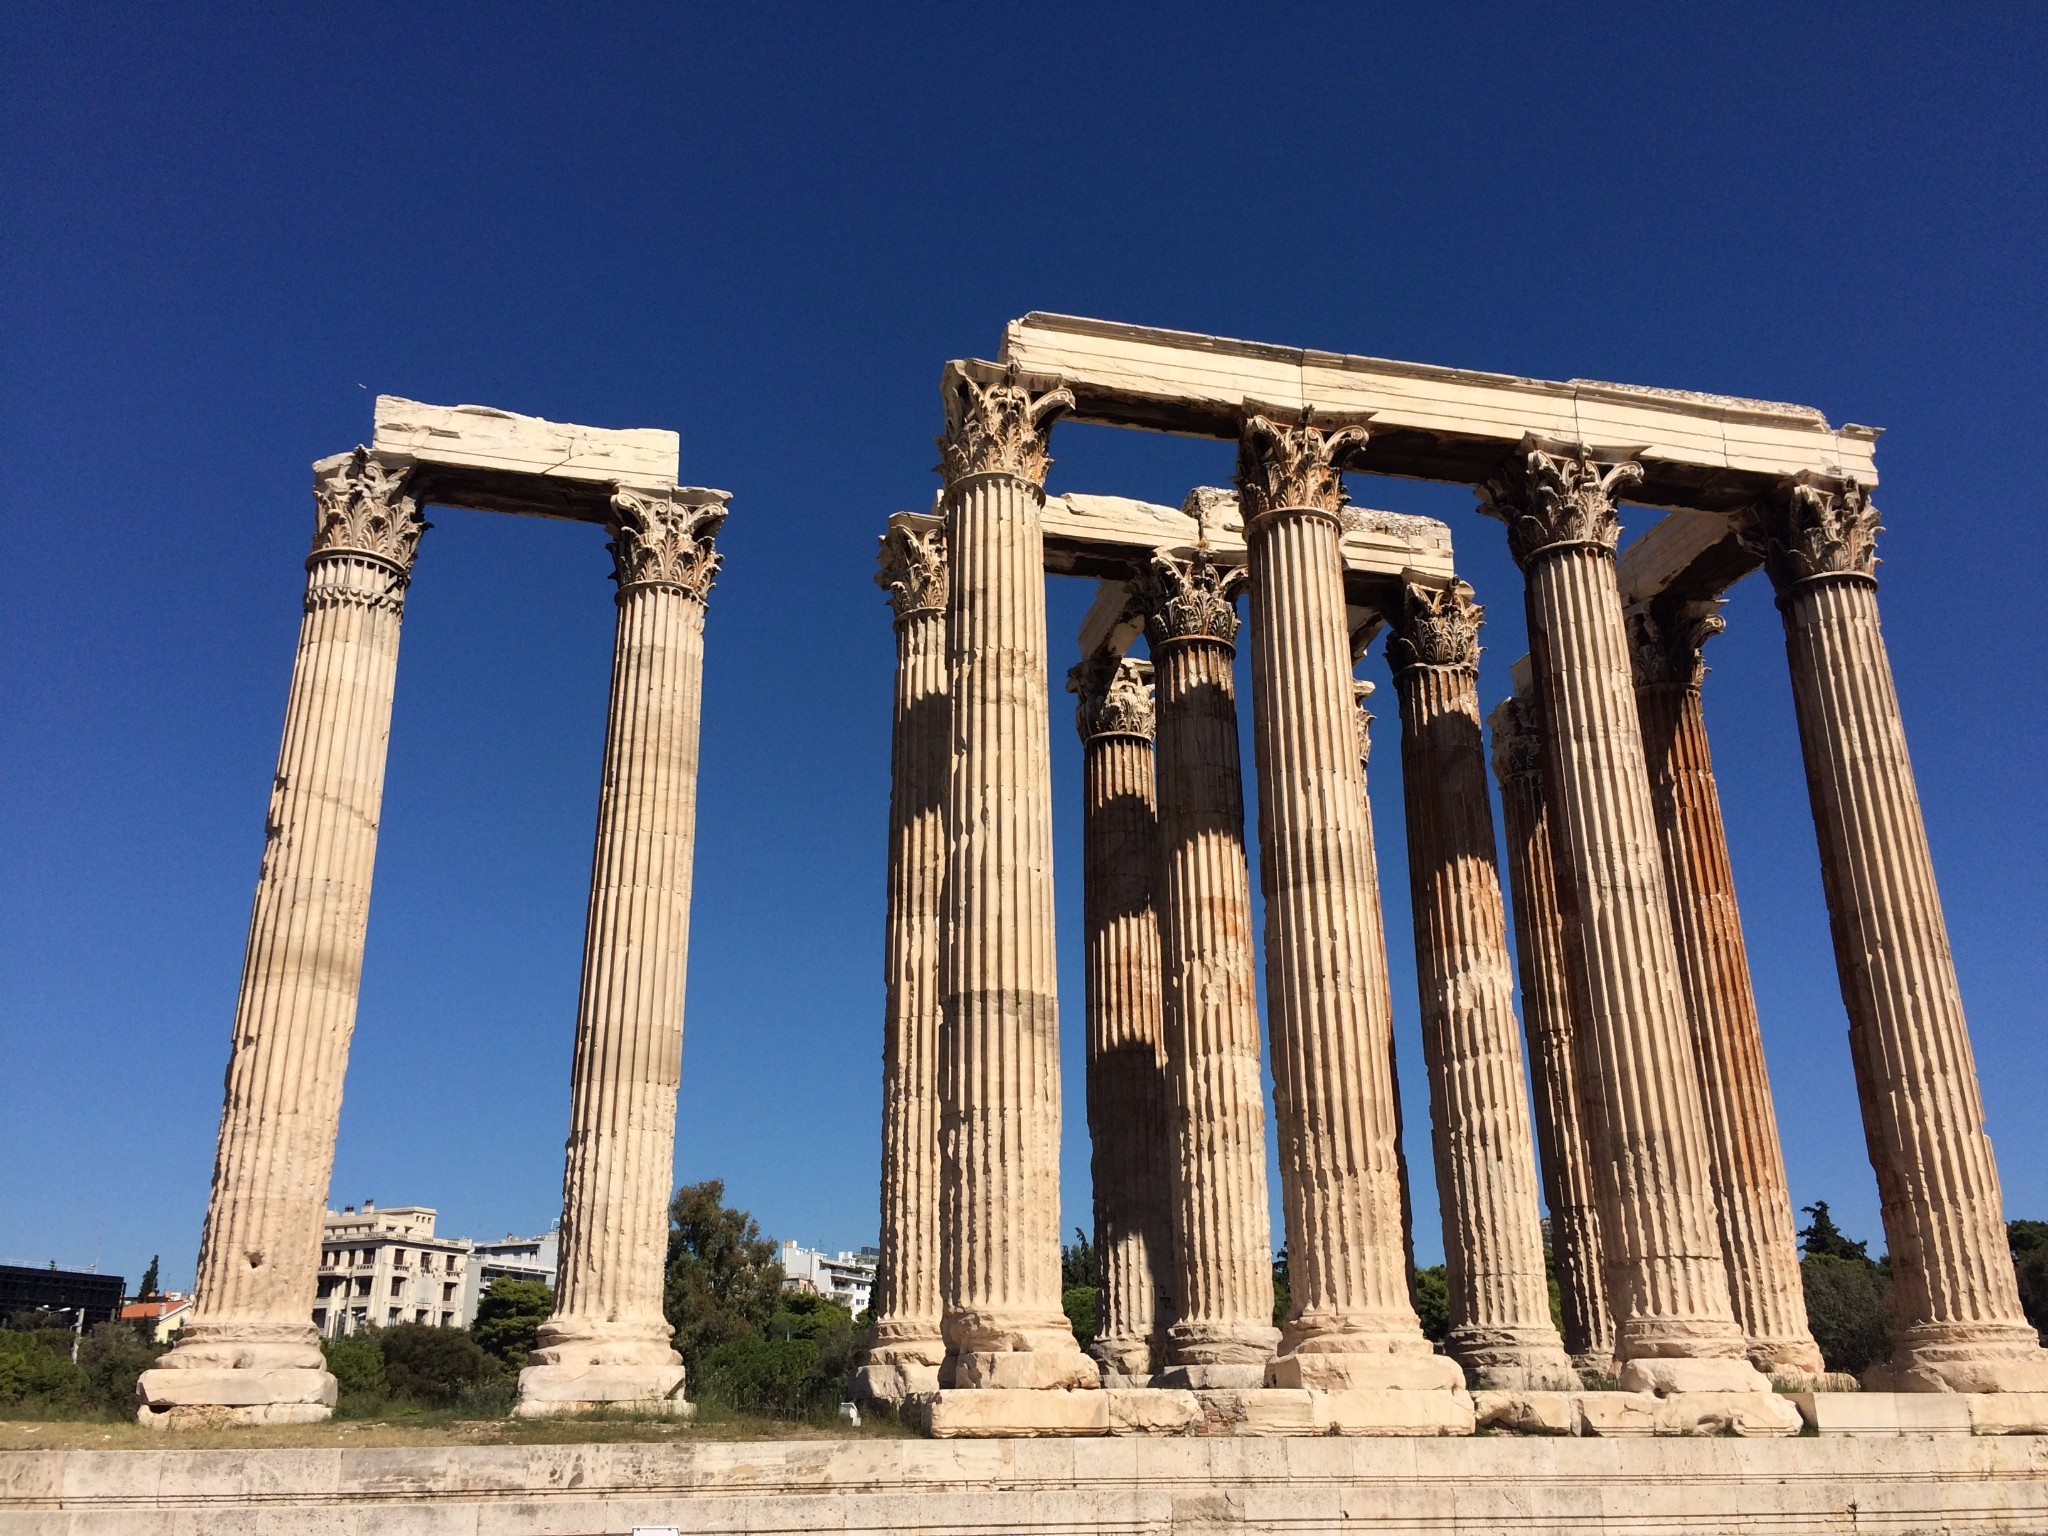 其他常见的罗马柱还有科林斯柱式,科林斯柱式最早可能出现于雅典奥林